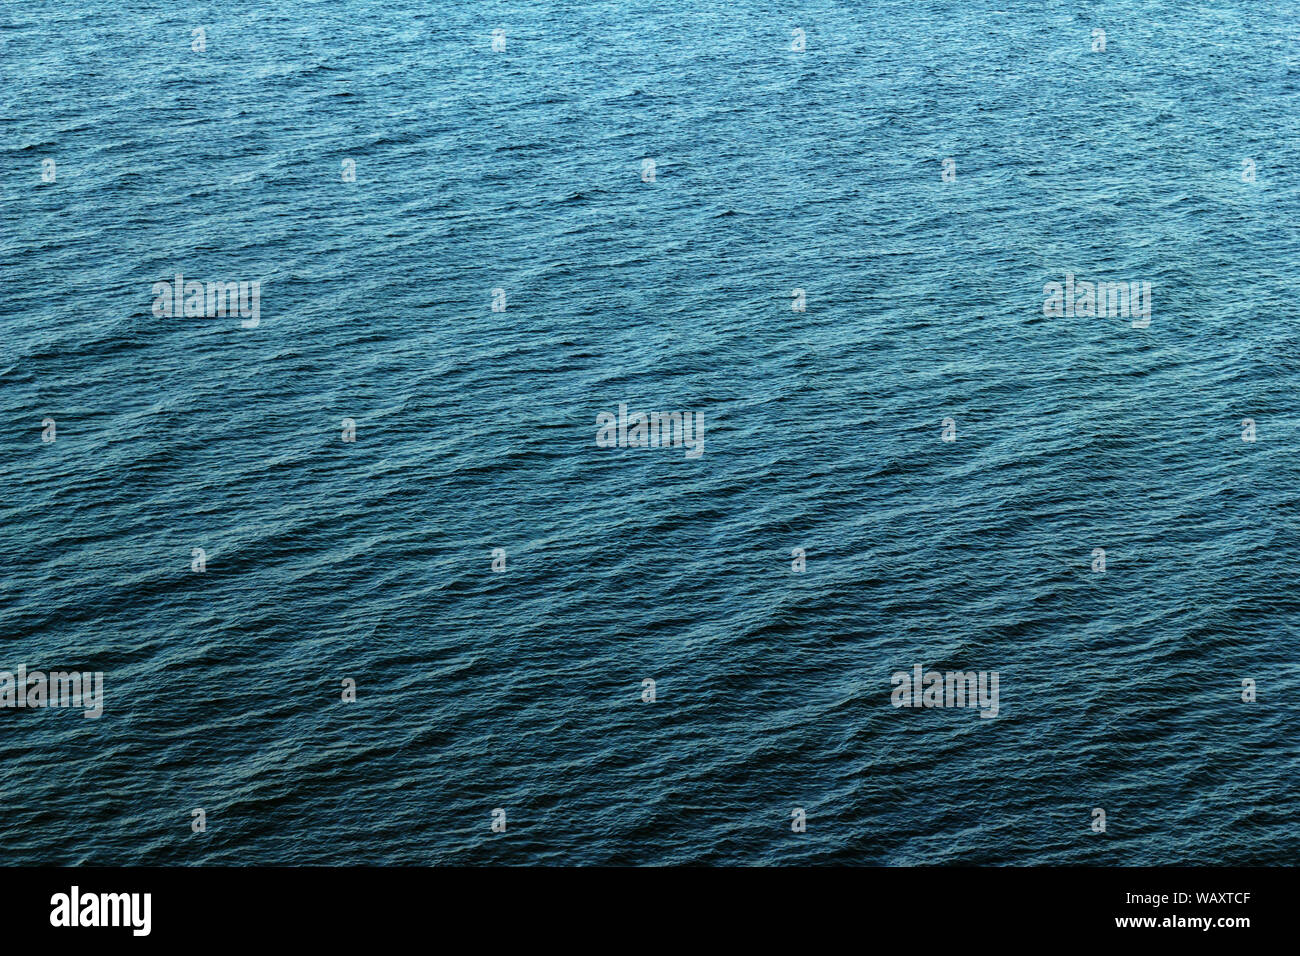 Les vagues de fond bleu et de la surface de la mer baltique Mer déménagement bird's eye view Banque D'Images